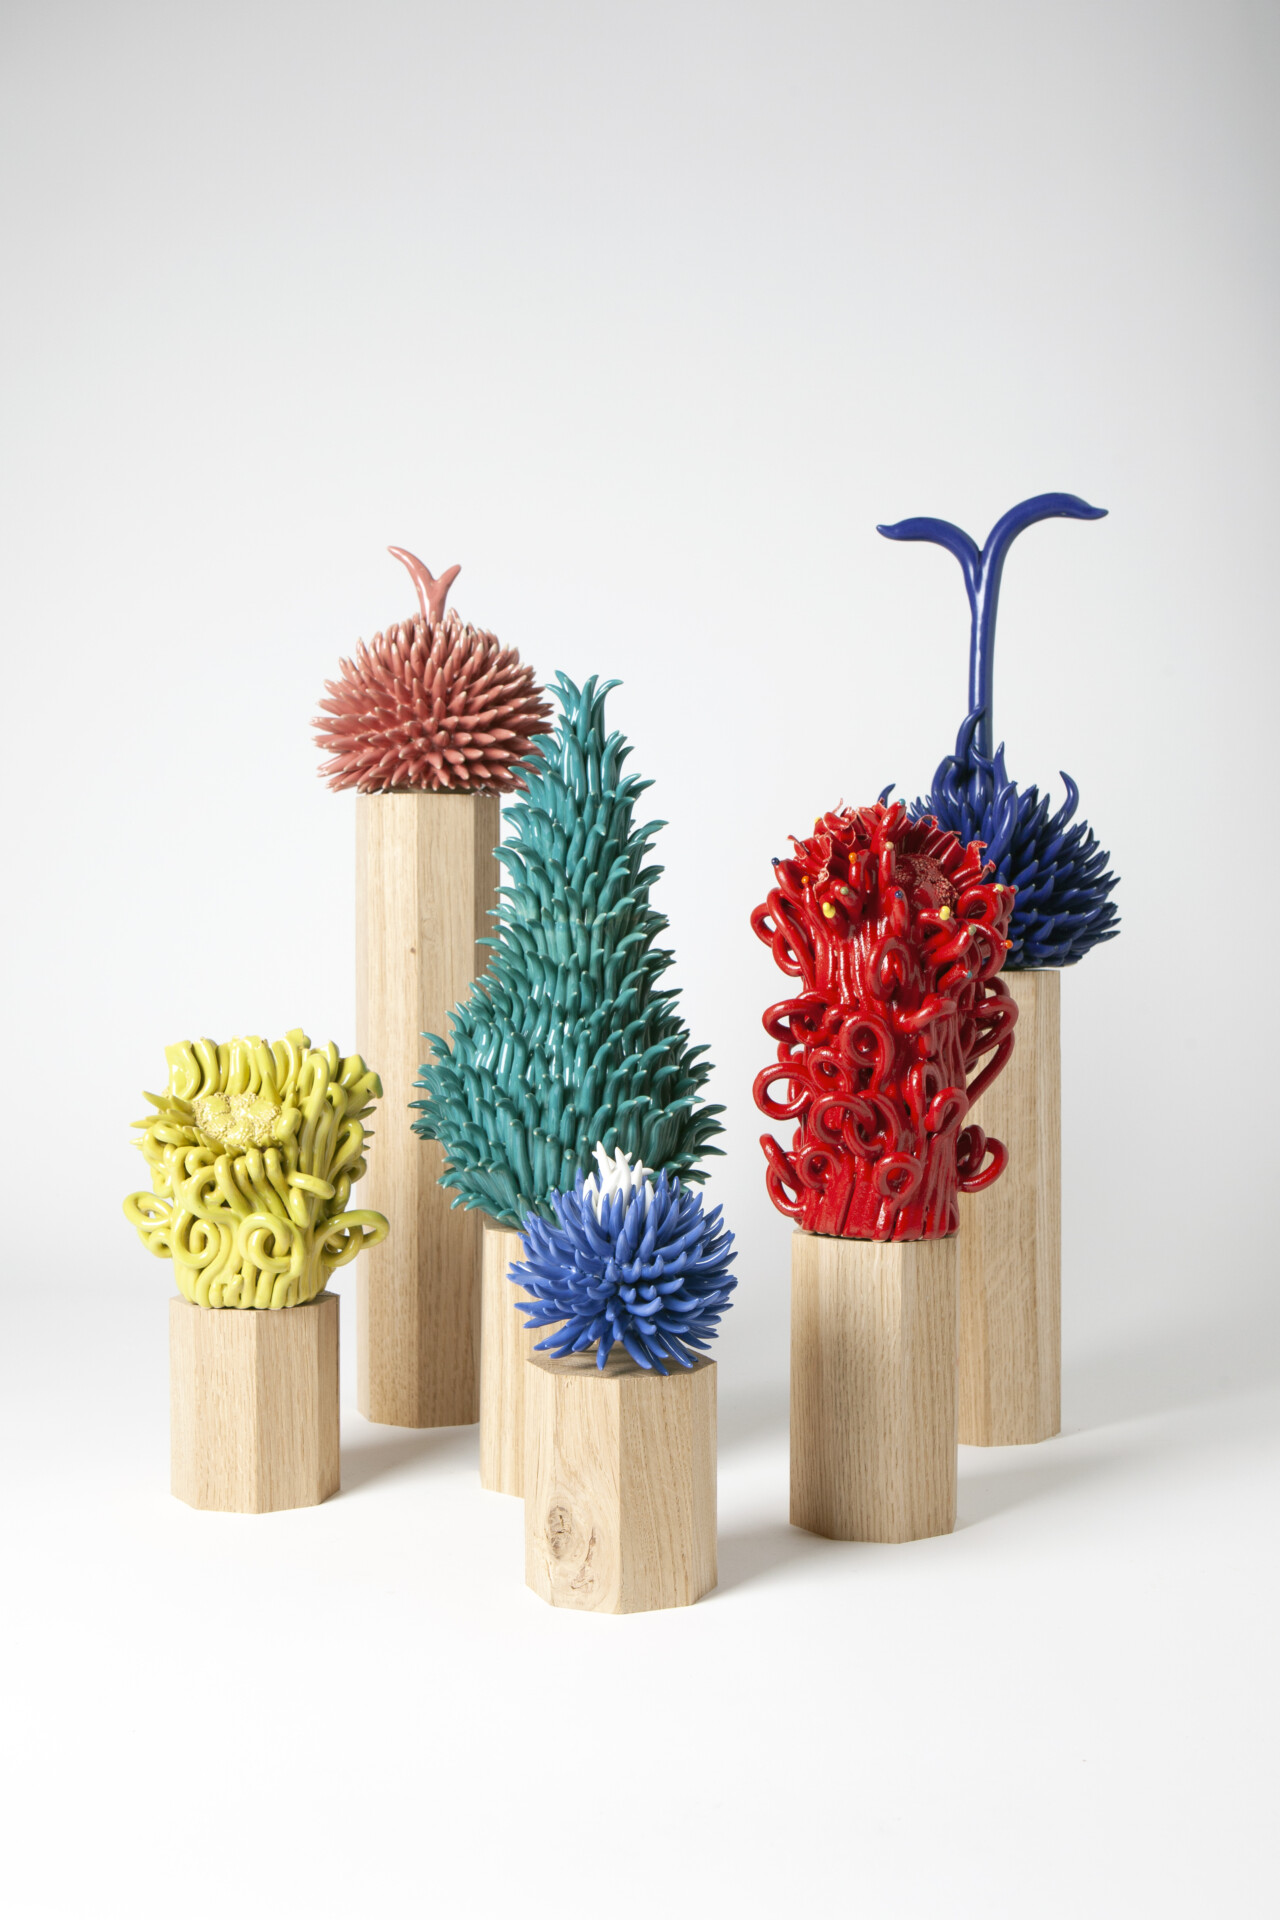 Ensembles de sculptures uniques de différentes couleurs, rouge, vert, jaune, bleu, inspirées des mondes végétaux en céramique par Jeanne Andrieu